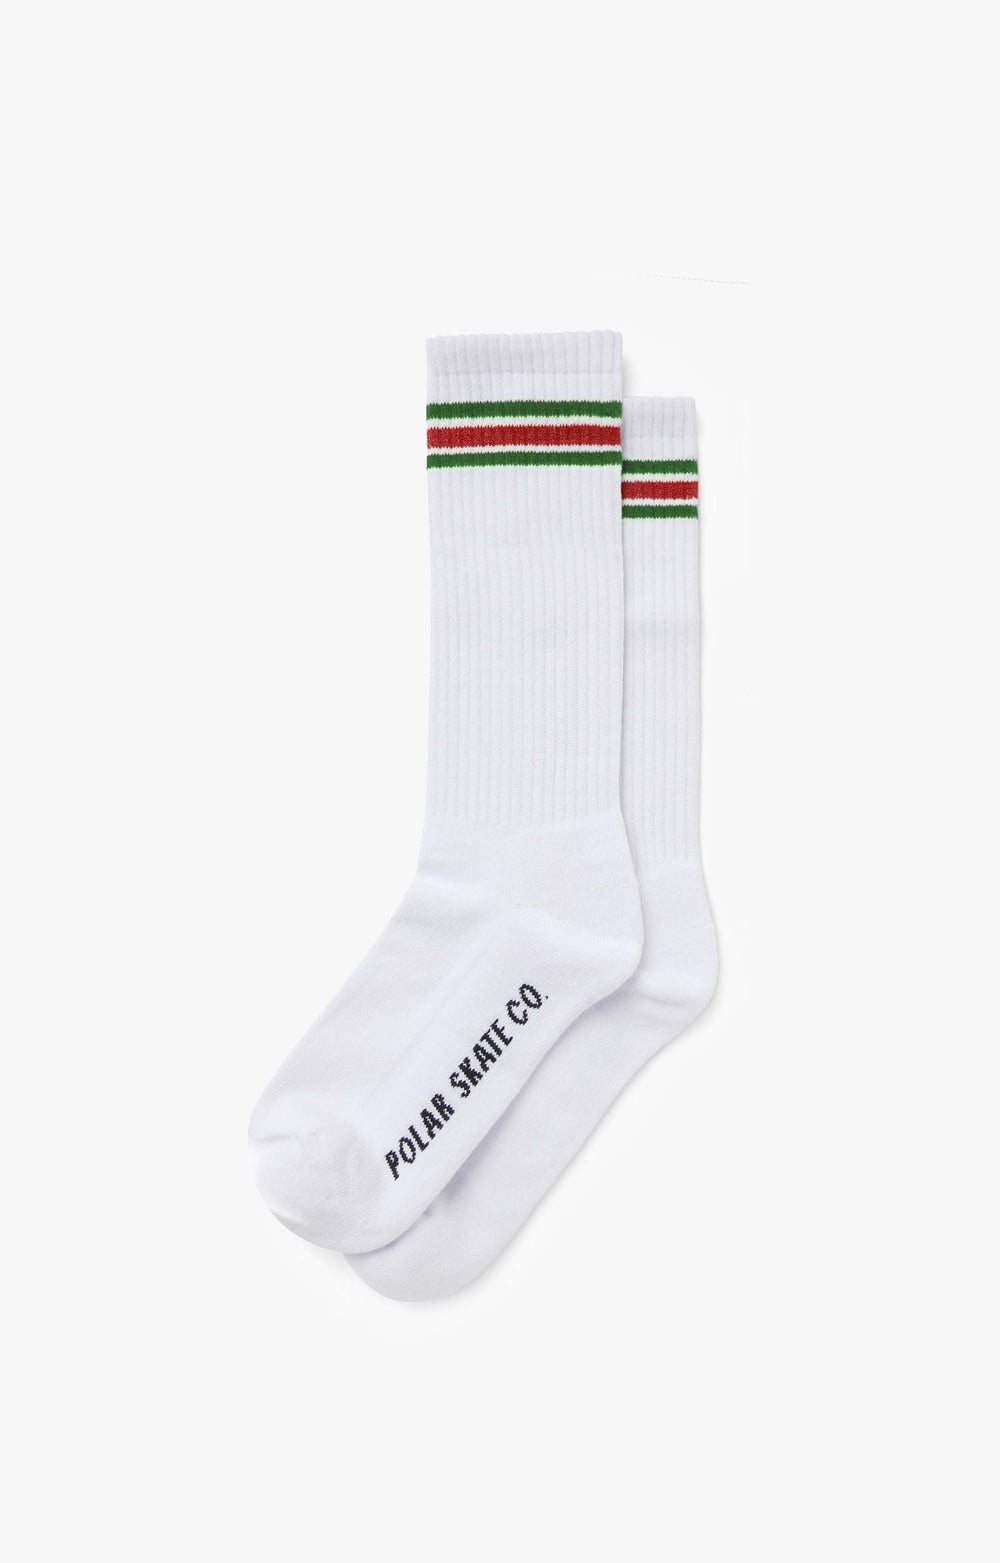 Polar Skate Co Long Stripe Socks, White/Green/Red